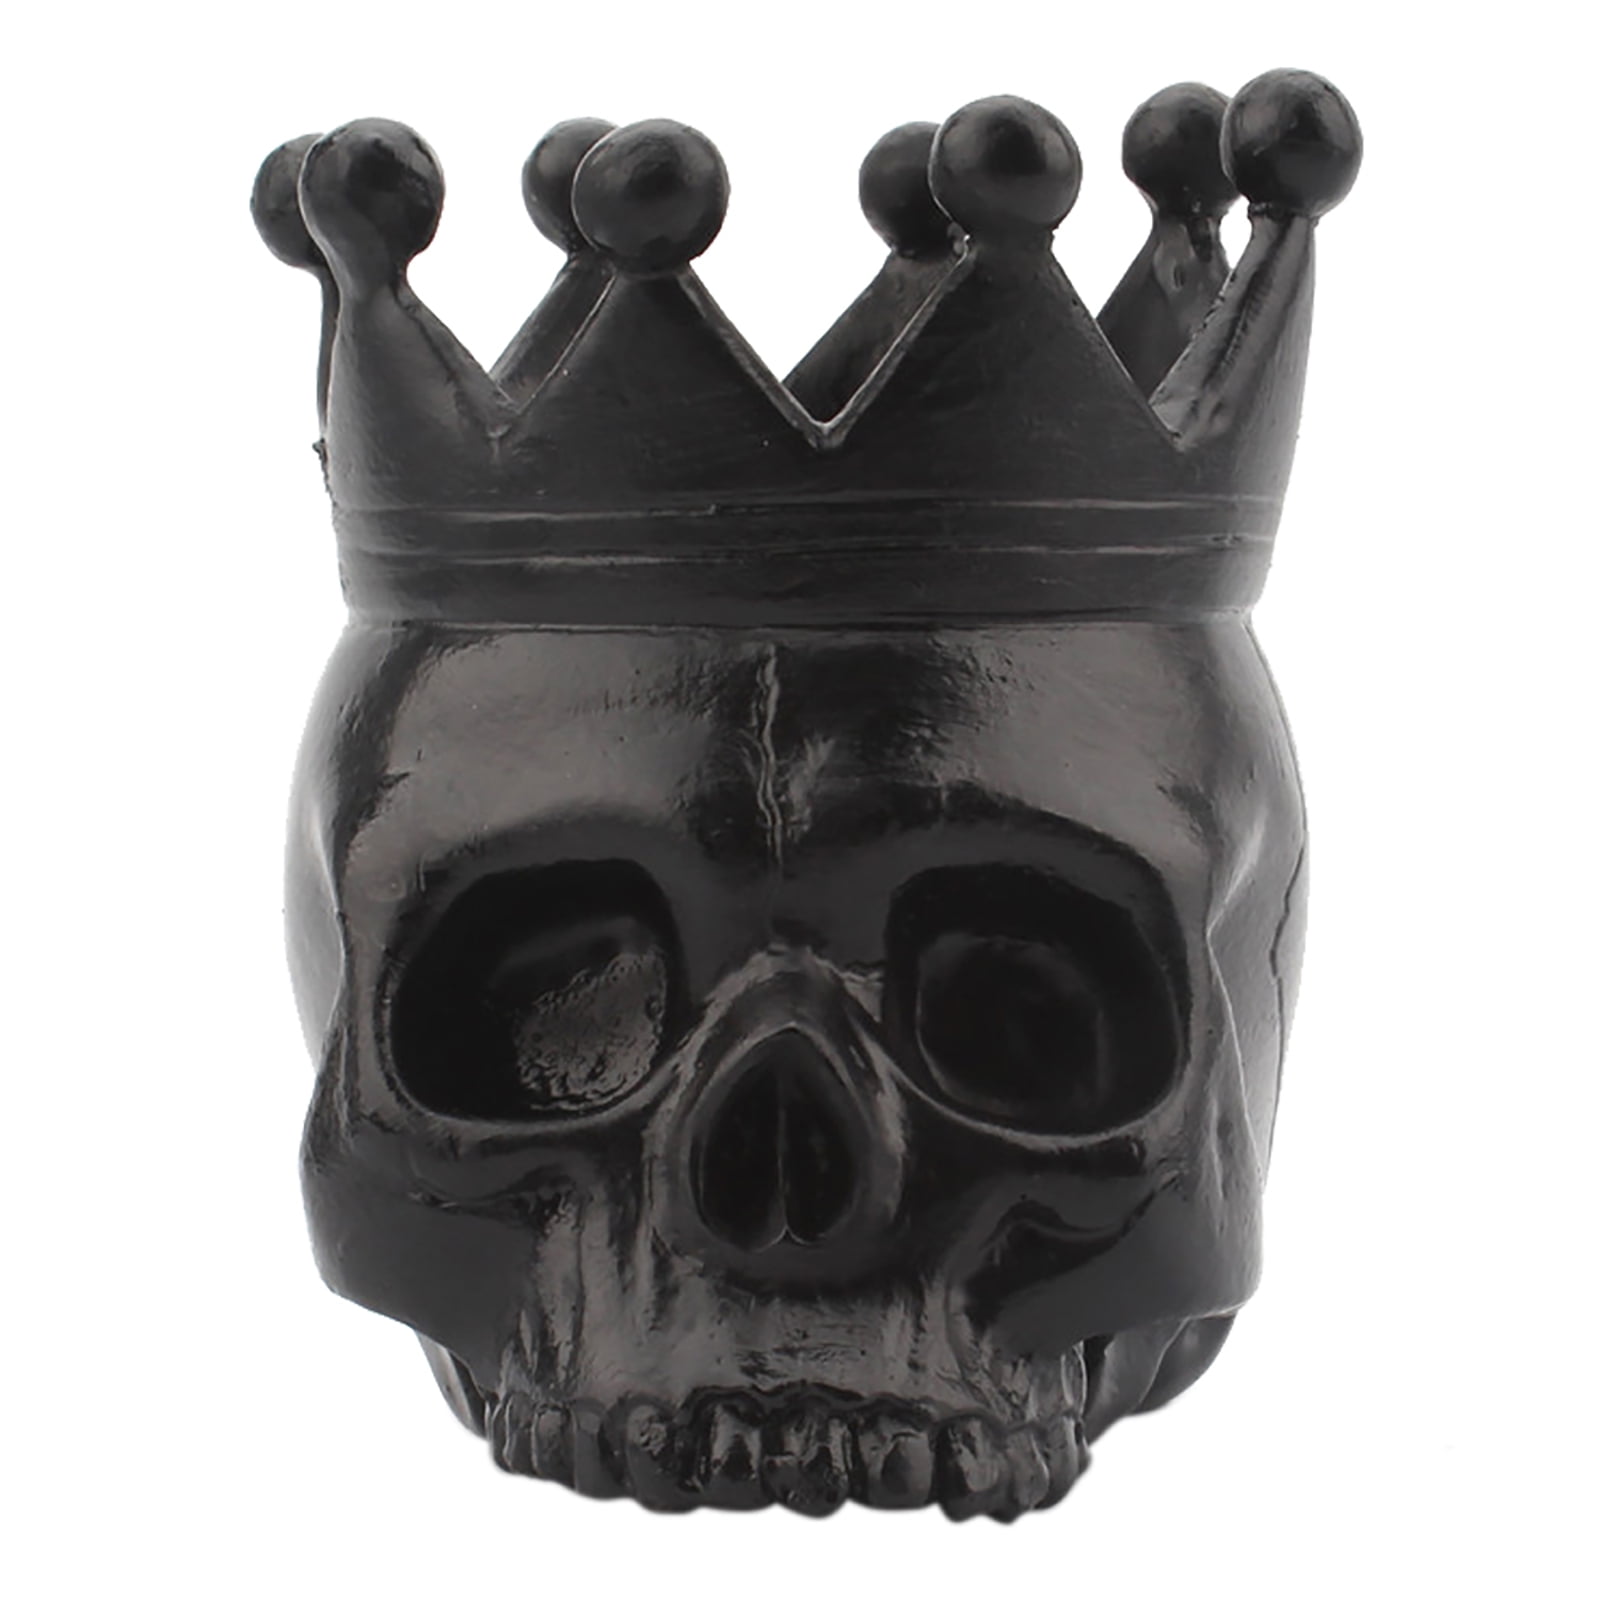 Skull Tealight Holder Choose Your Design Horror Gothic Fantasy Gift Ornament 